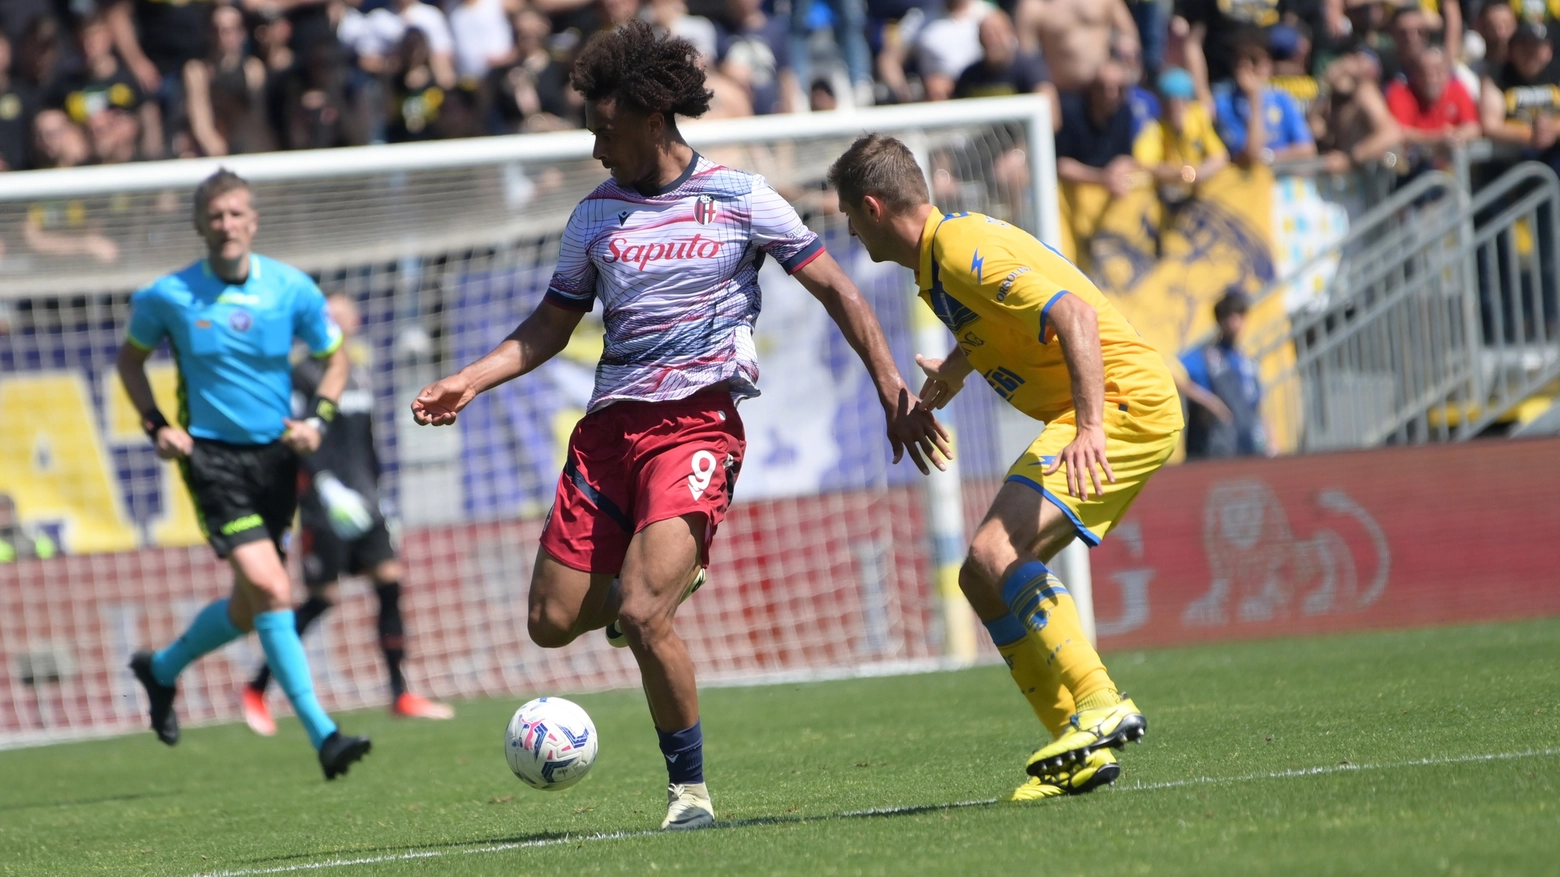 Frosinone - Bologna, un momento della partita valida per la 31esima giornata di serie A (FotoSchicchi)